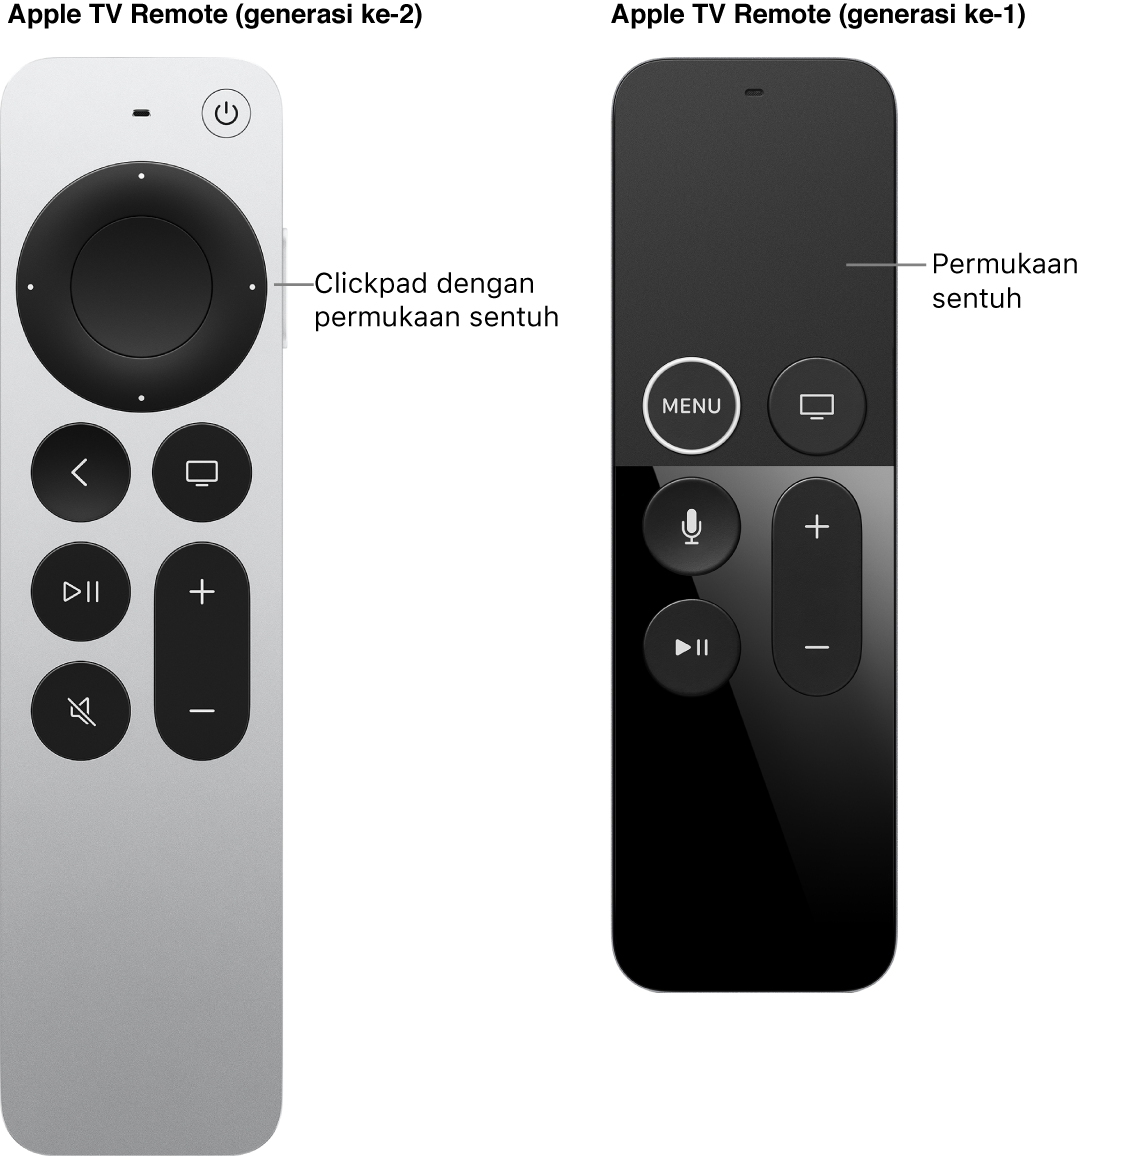 Remote Apple TV (generasi ke-2) dengan clickpad dan Remote Apple TV (generasi ke-1) dengan permukaan sentuh